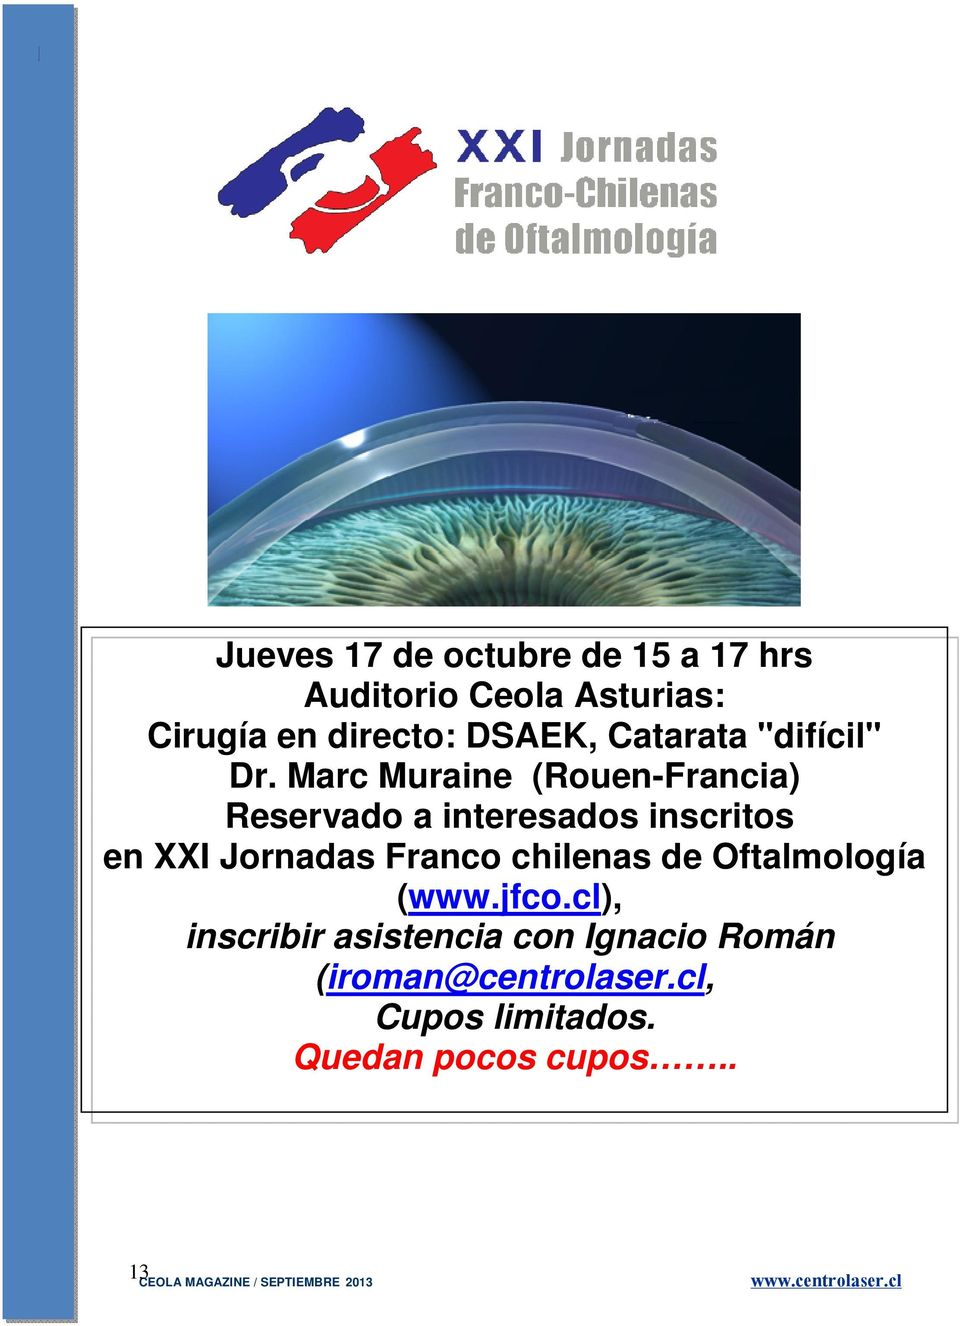 Marc Muraine (Rouen-Francia) Reservado a interesados inscritos en XXI Jornadas Franco